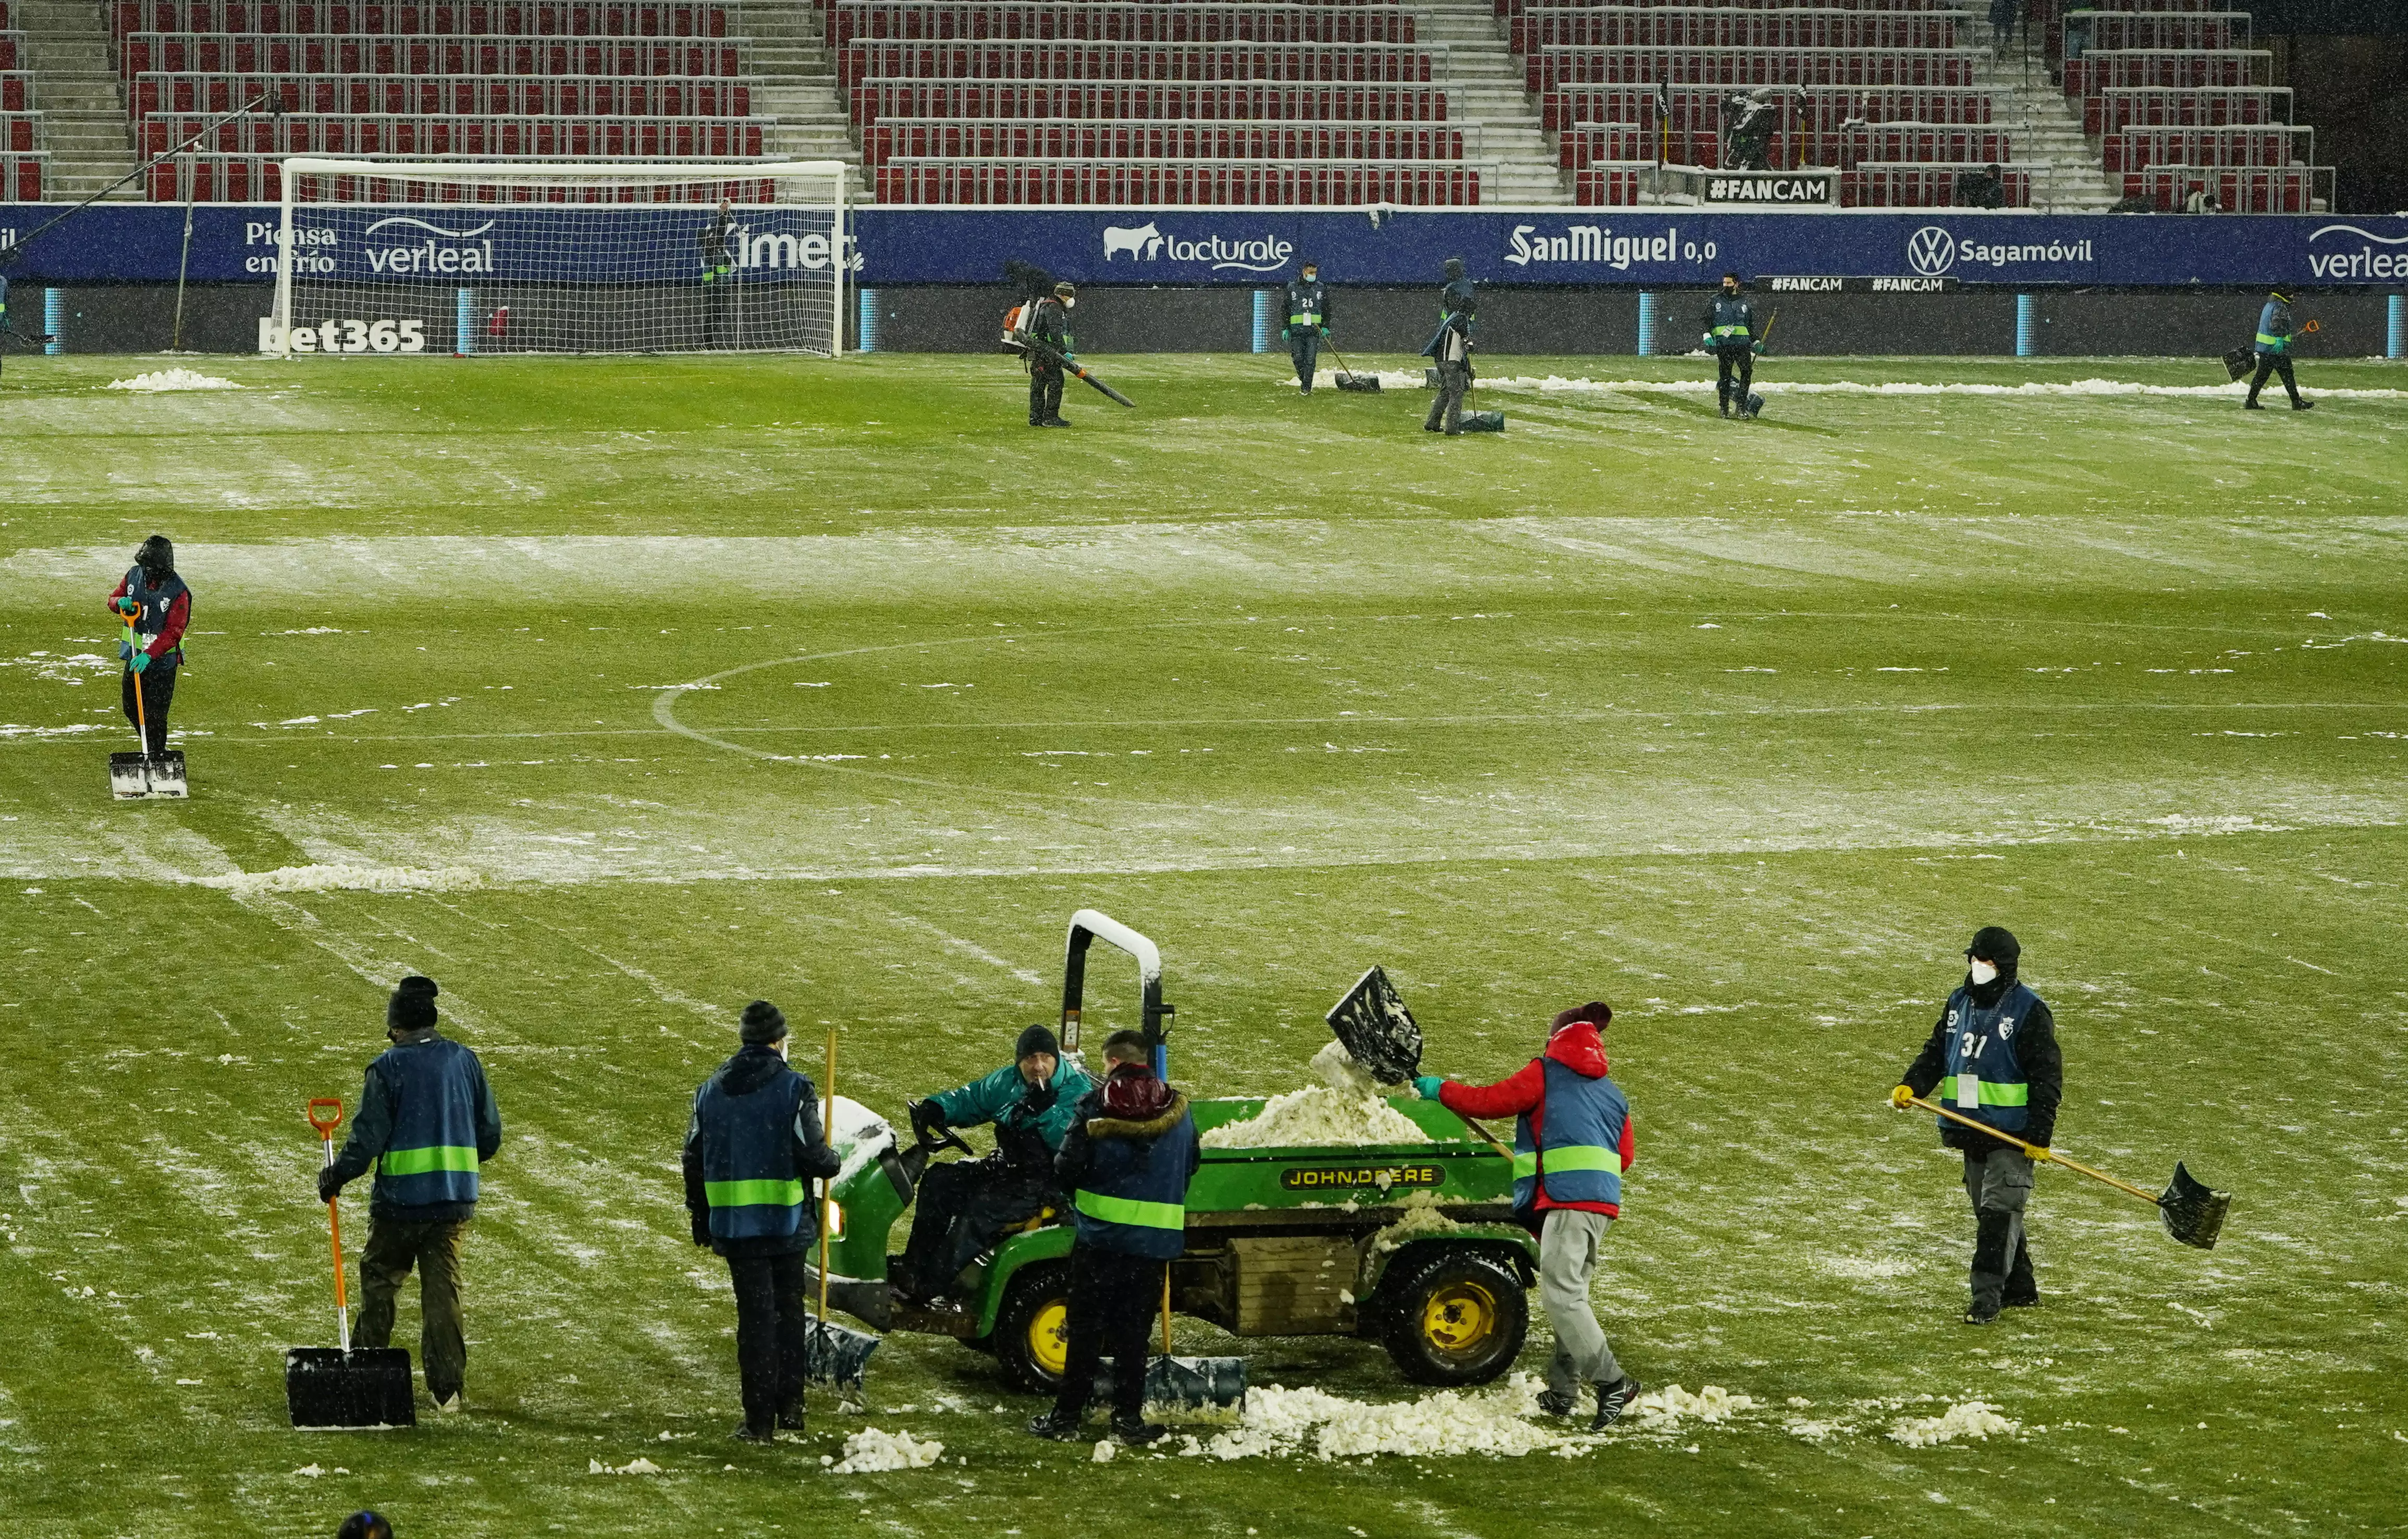 Работники стадиона "Осасуны" расчищали поле перед матчем с "Реалом"